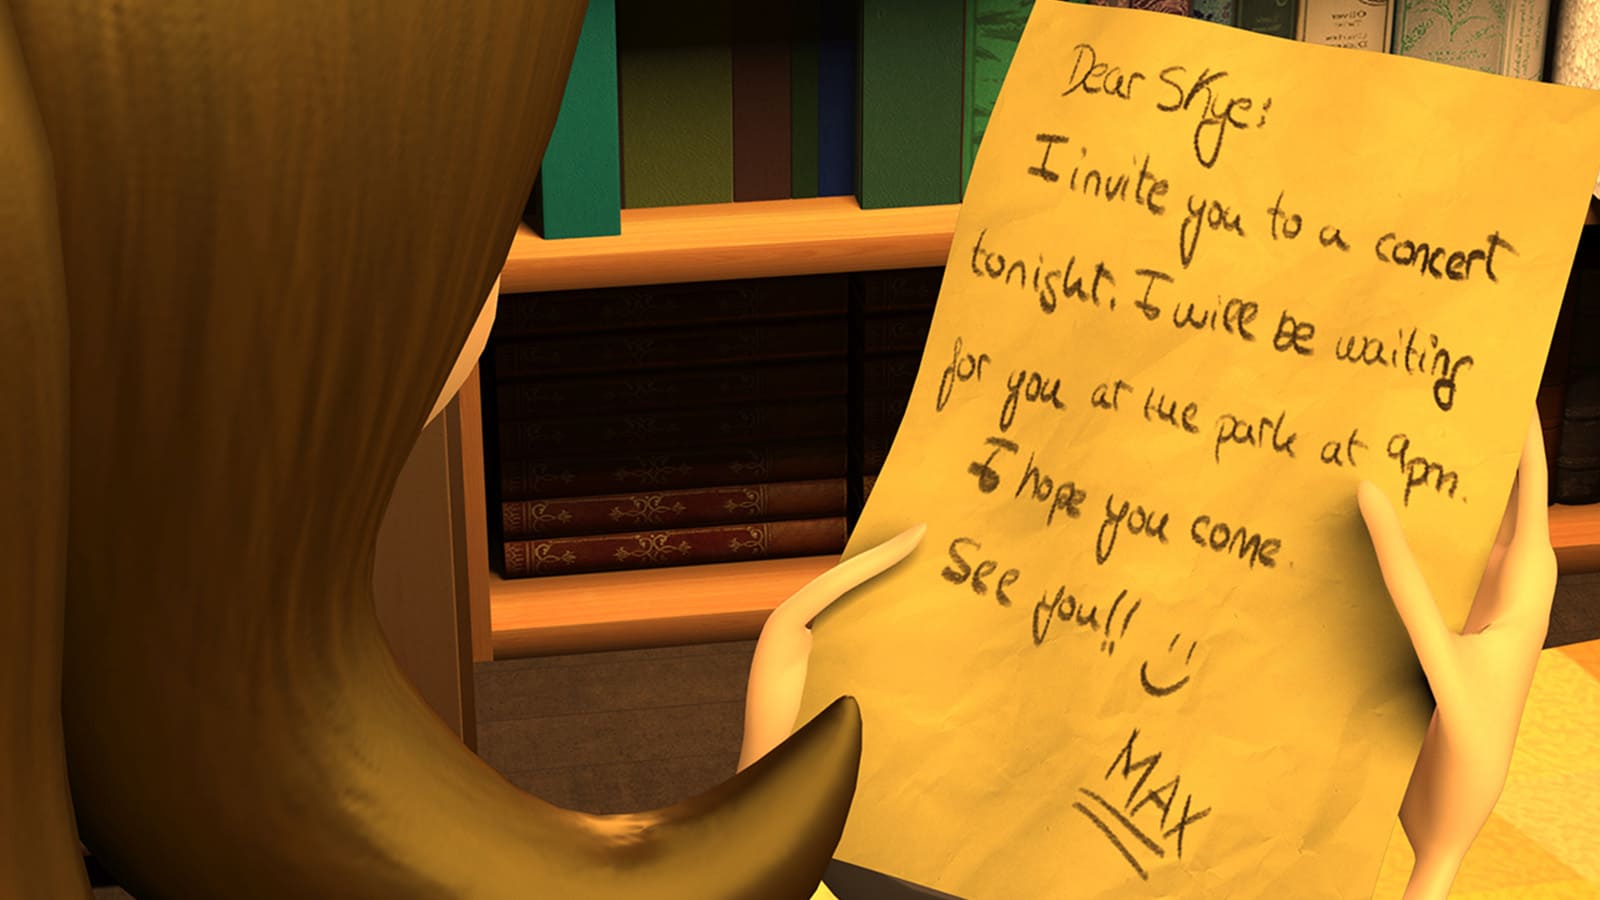 Skye, la protagonista, lee una nota de papel, se trata de una invitación a un concierto que la llena de emoción por la próxima cita.